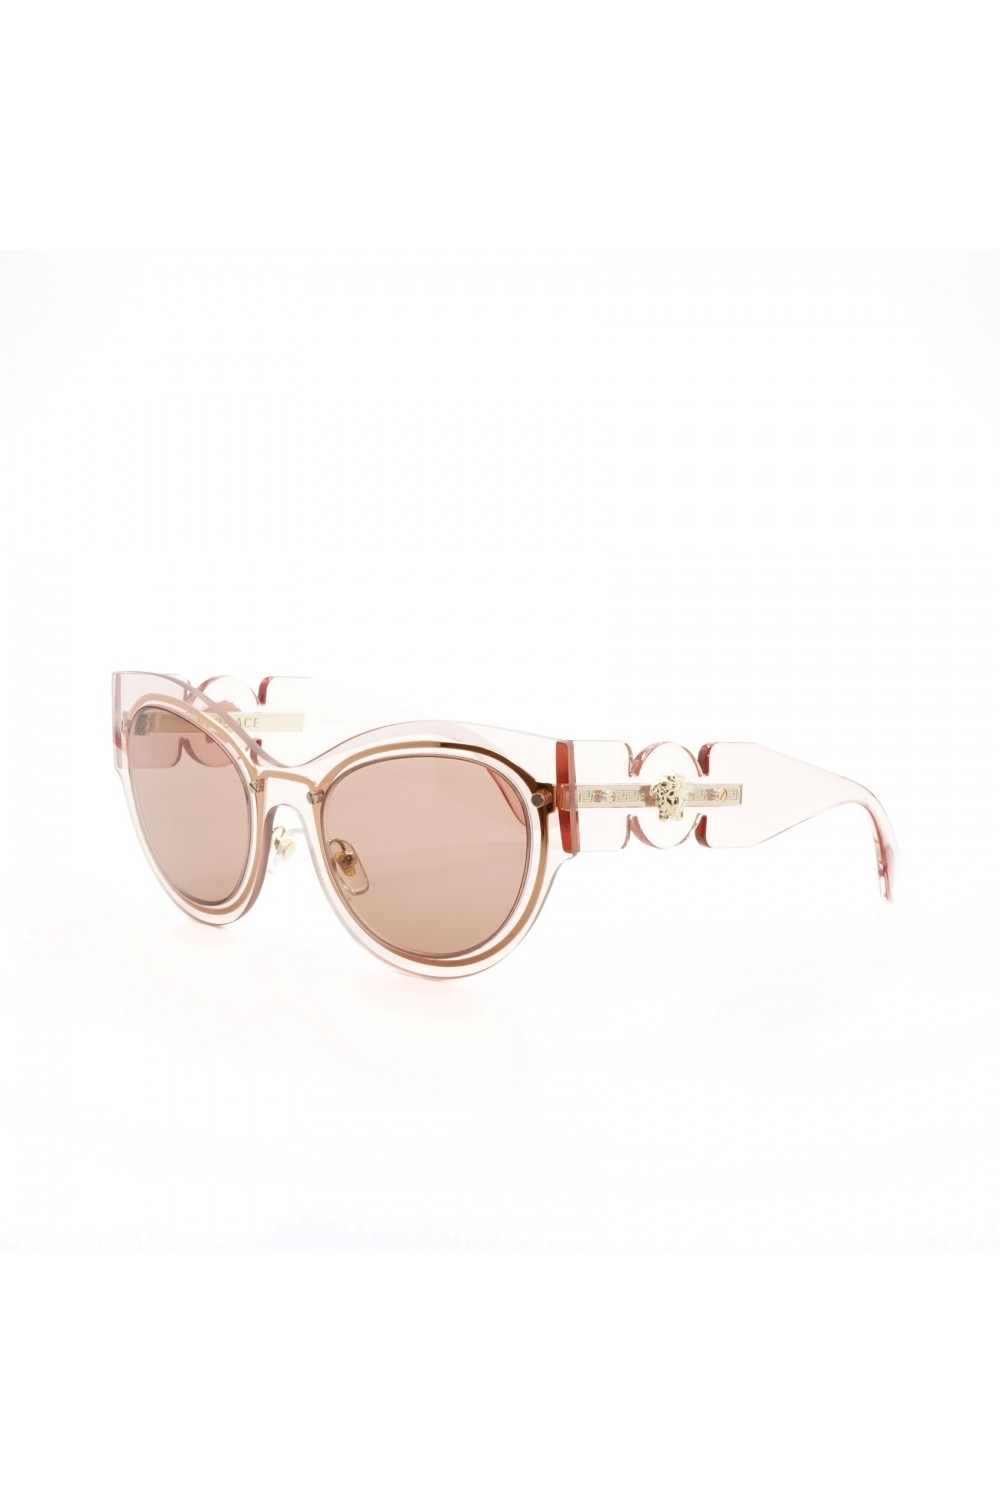 Versace - Occhiali da sole in plastica cat eye per donna rosa - 2234 1252/73